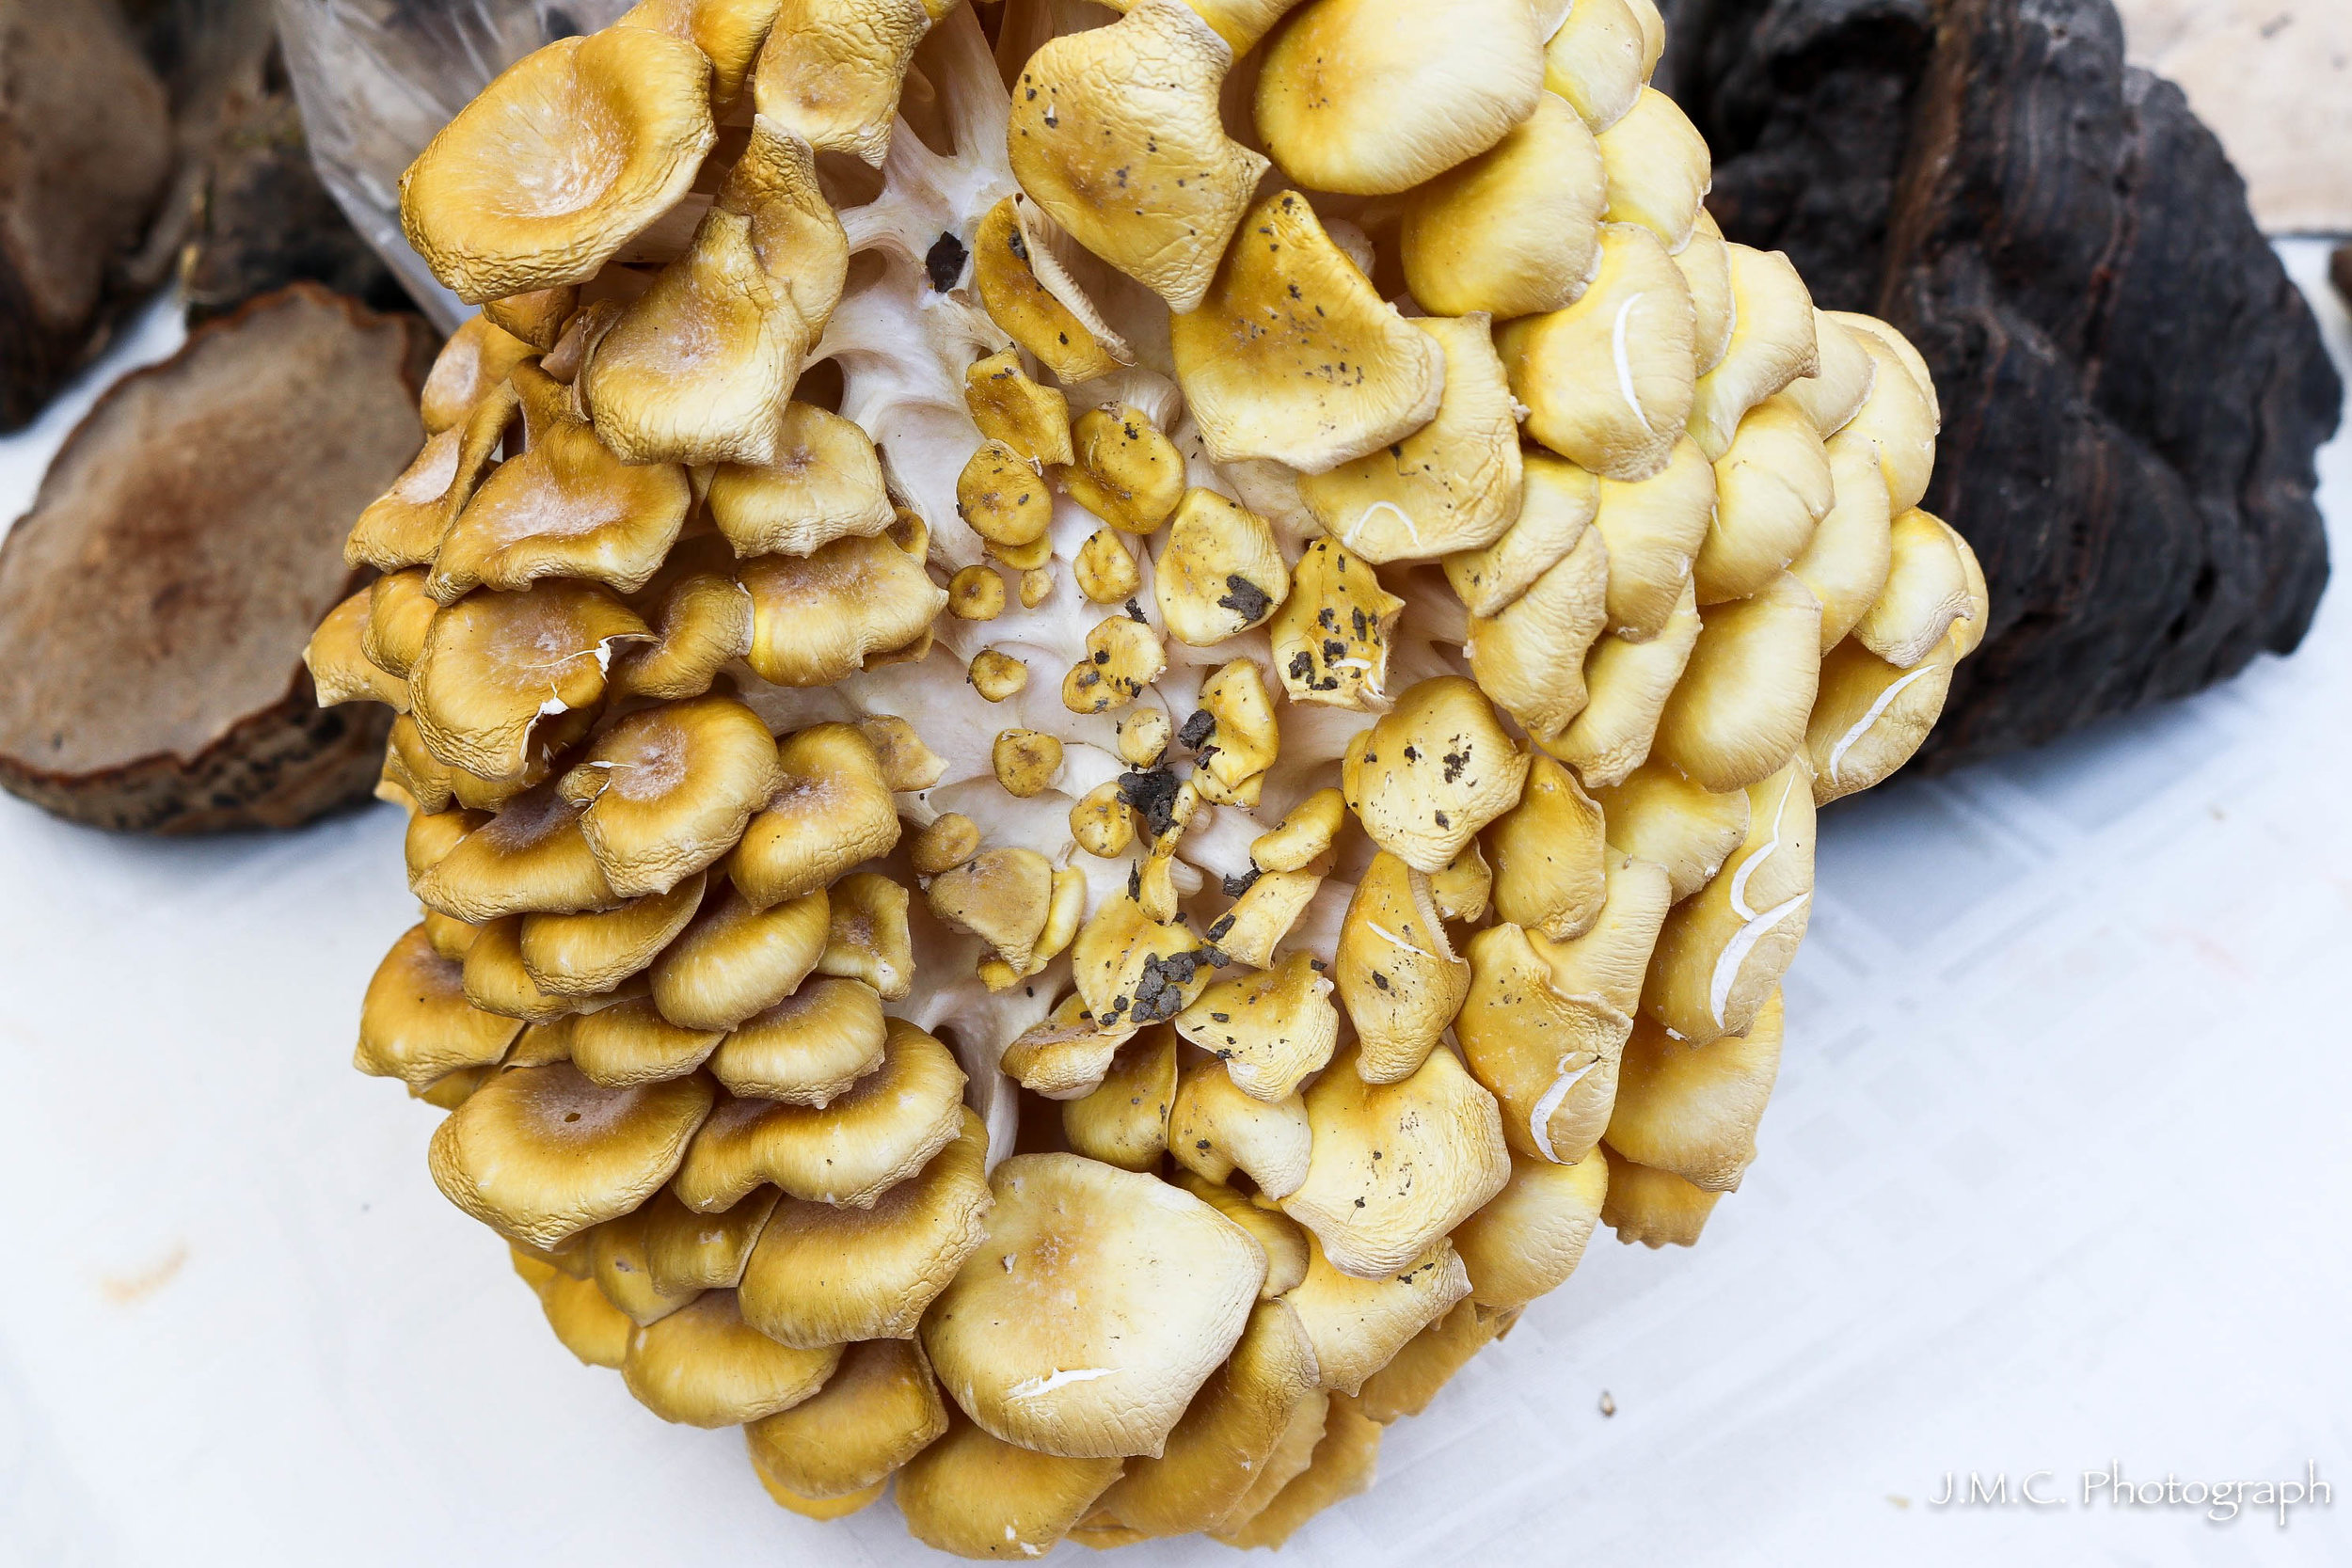 Mushroom Cluster